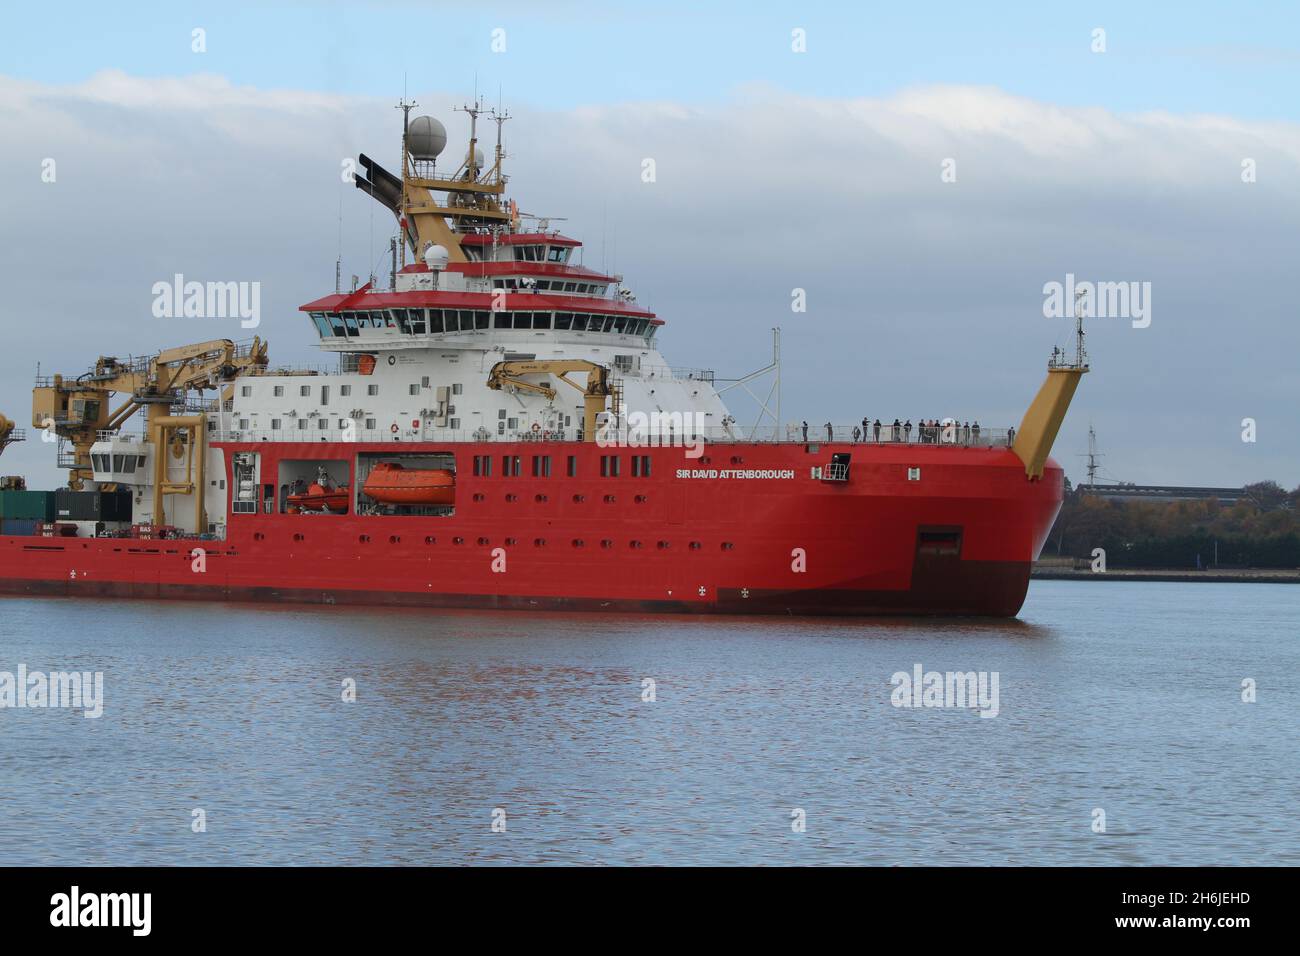 Harwich, Royaume-Uni.16 novembre 2021.Le RRS Sir David Attenborough, un navire de recherche polaire pour le British Antarctic Survey, part de Harwich lors de son premier voyage en Antarctique.Crédit : Eastern Views/Alamy Live News Banque D'Images